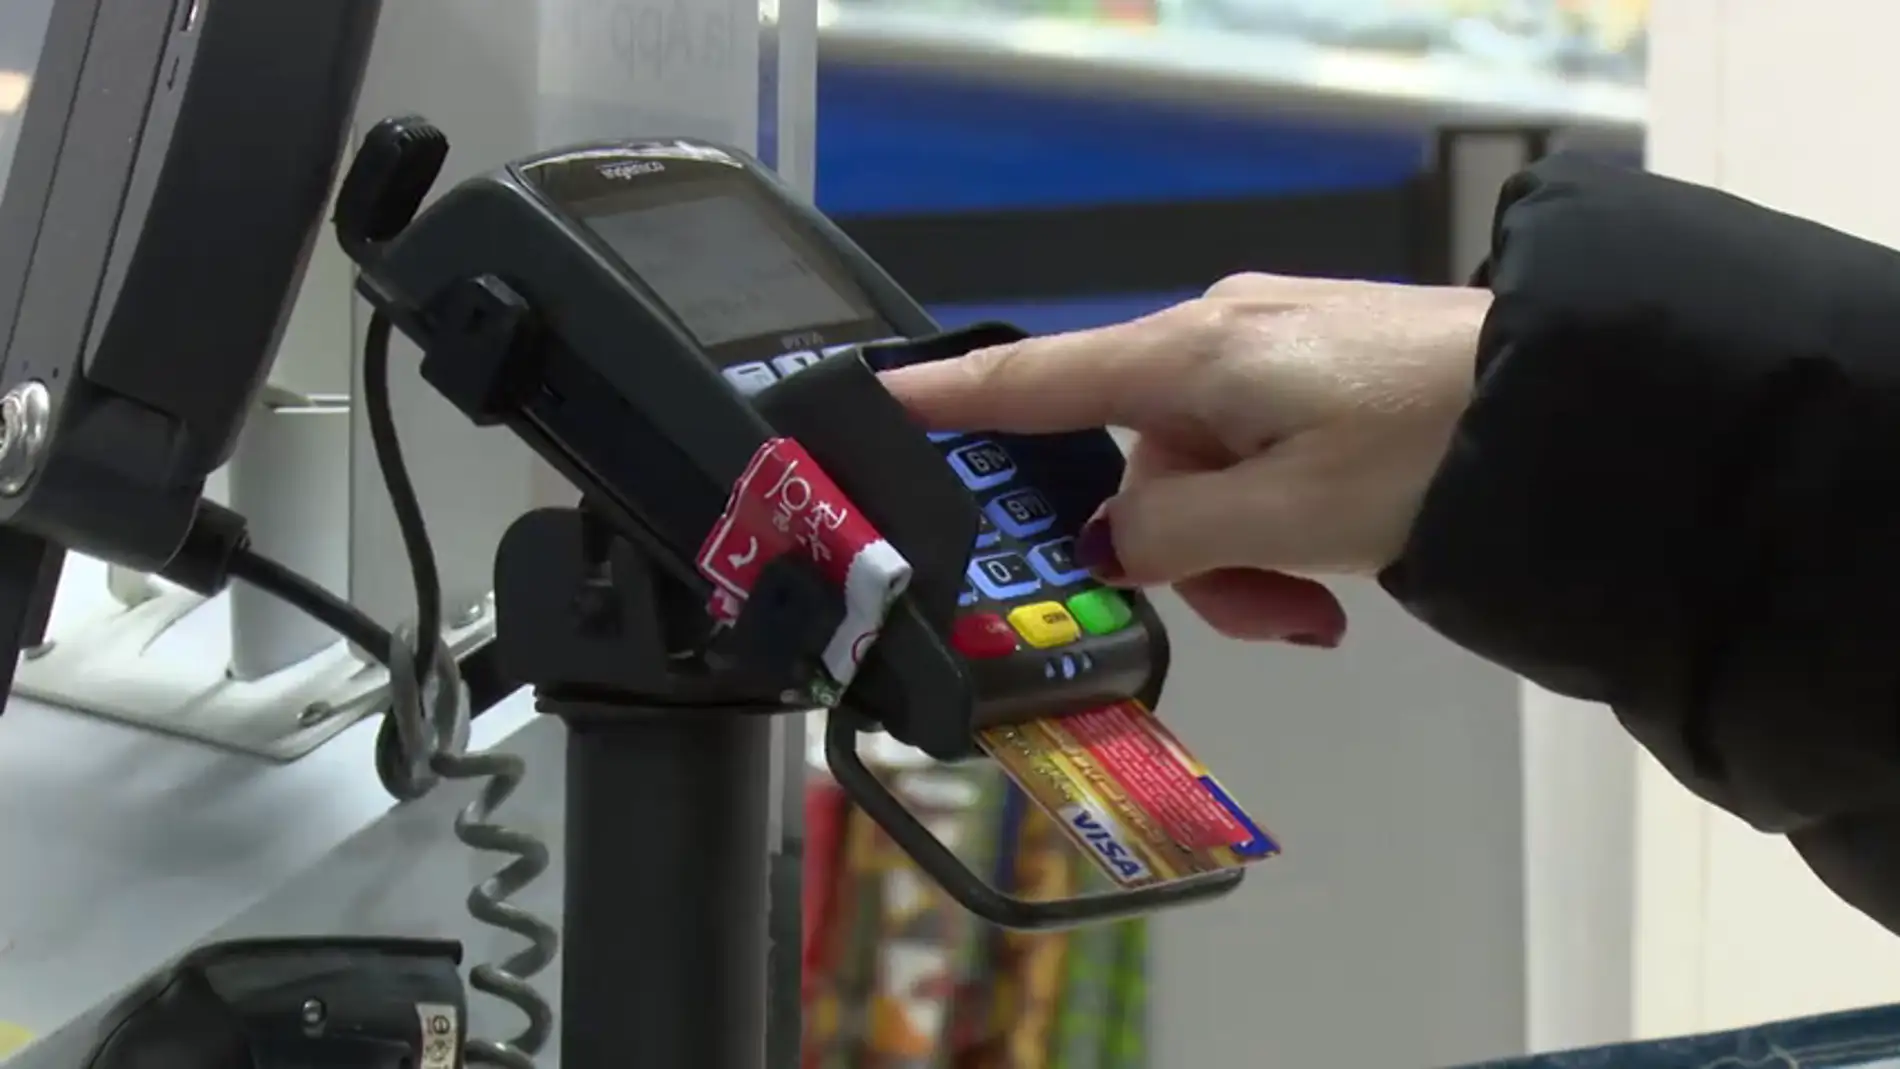 Robaban las tarjetas a clientes de supermercados y antes vigilaban cómo tecleaban el pin